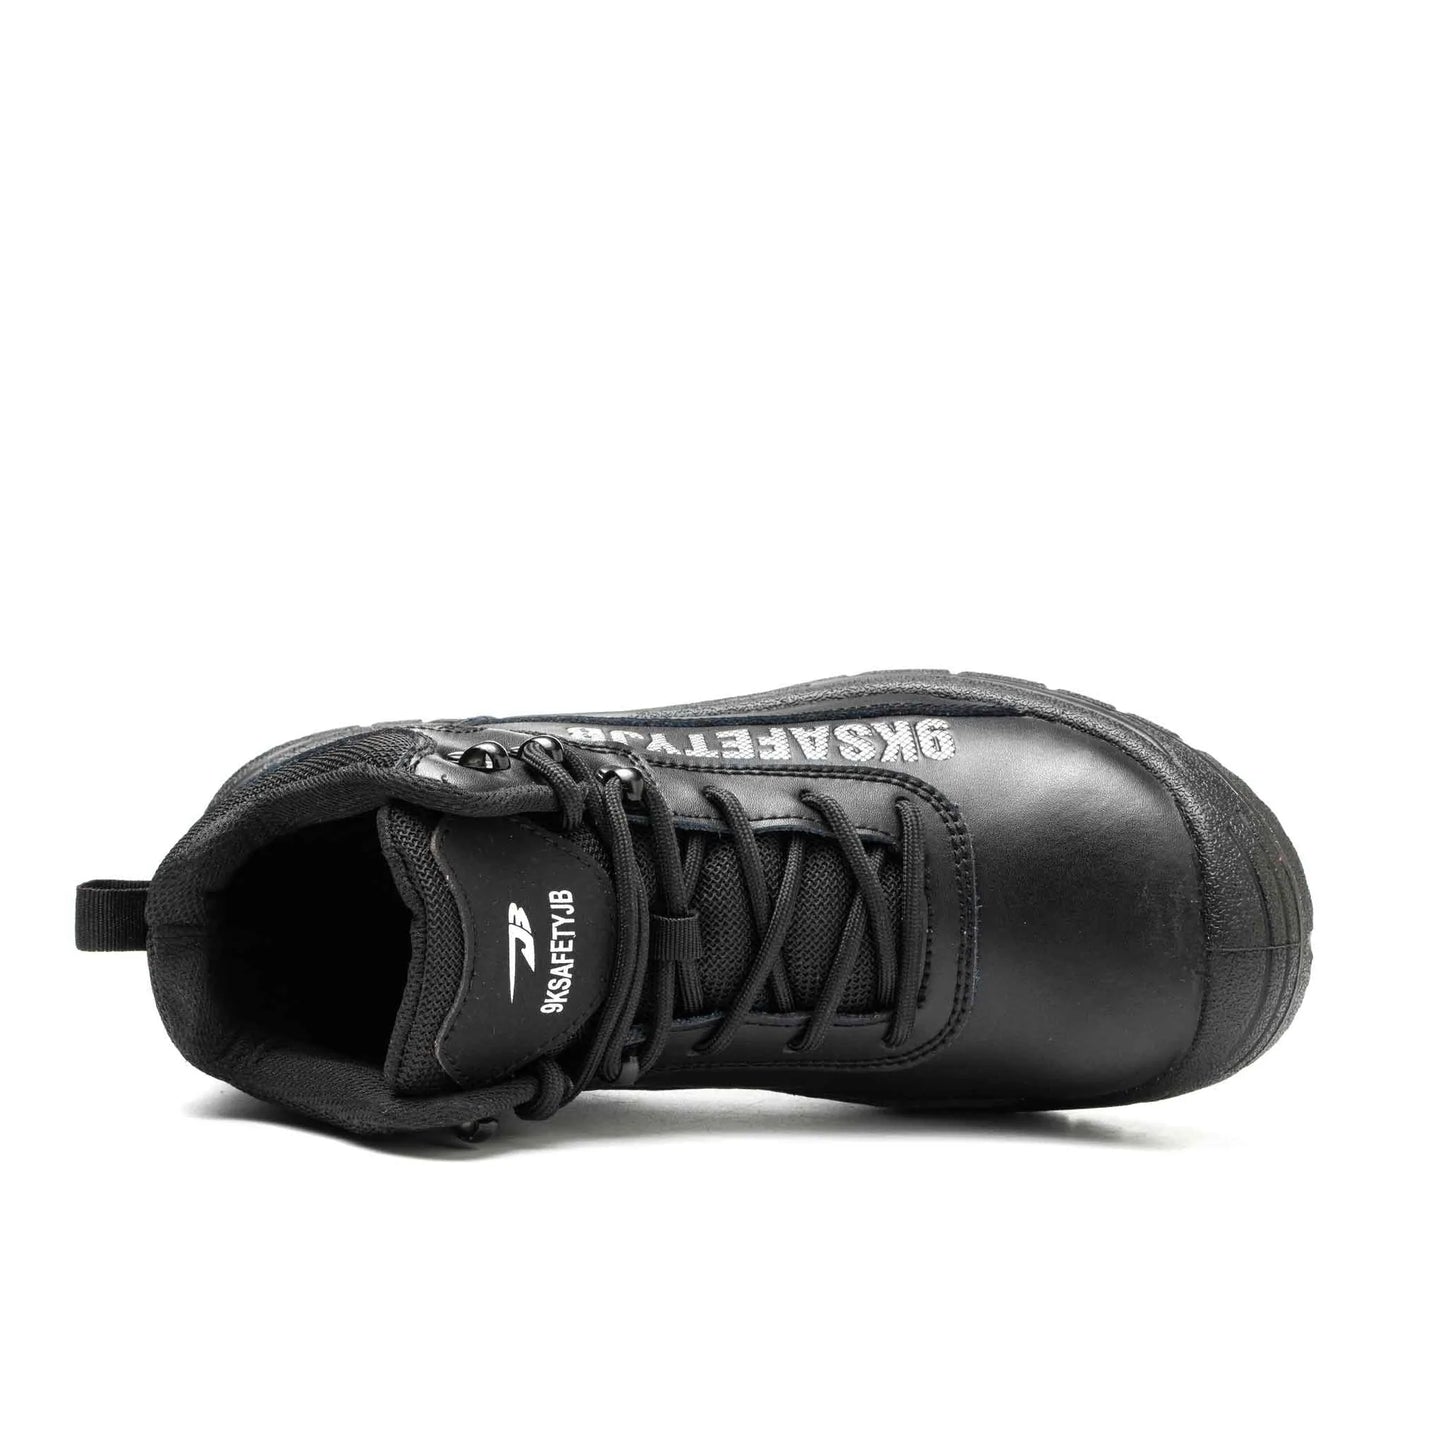 Ironfeet Safety - Chaussures de sécurité indestructibles